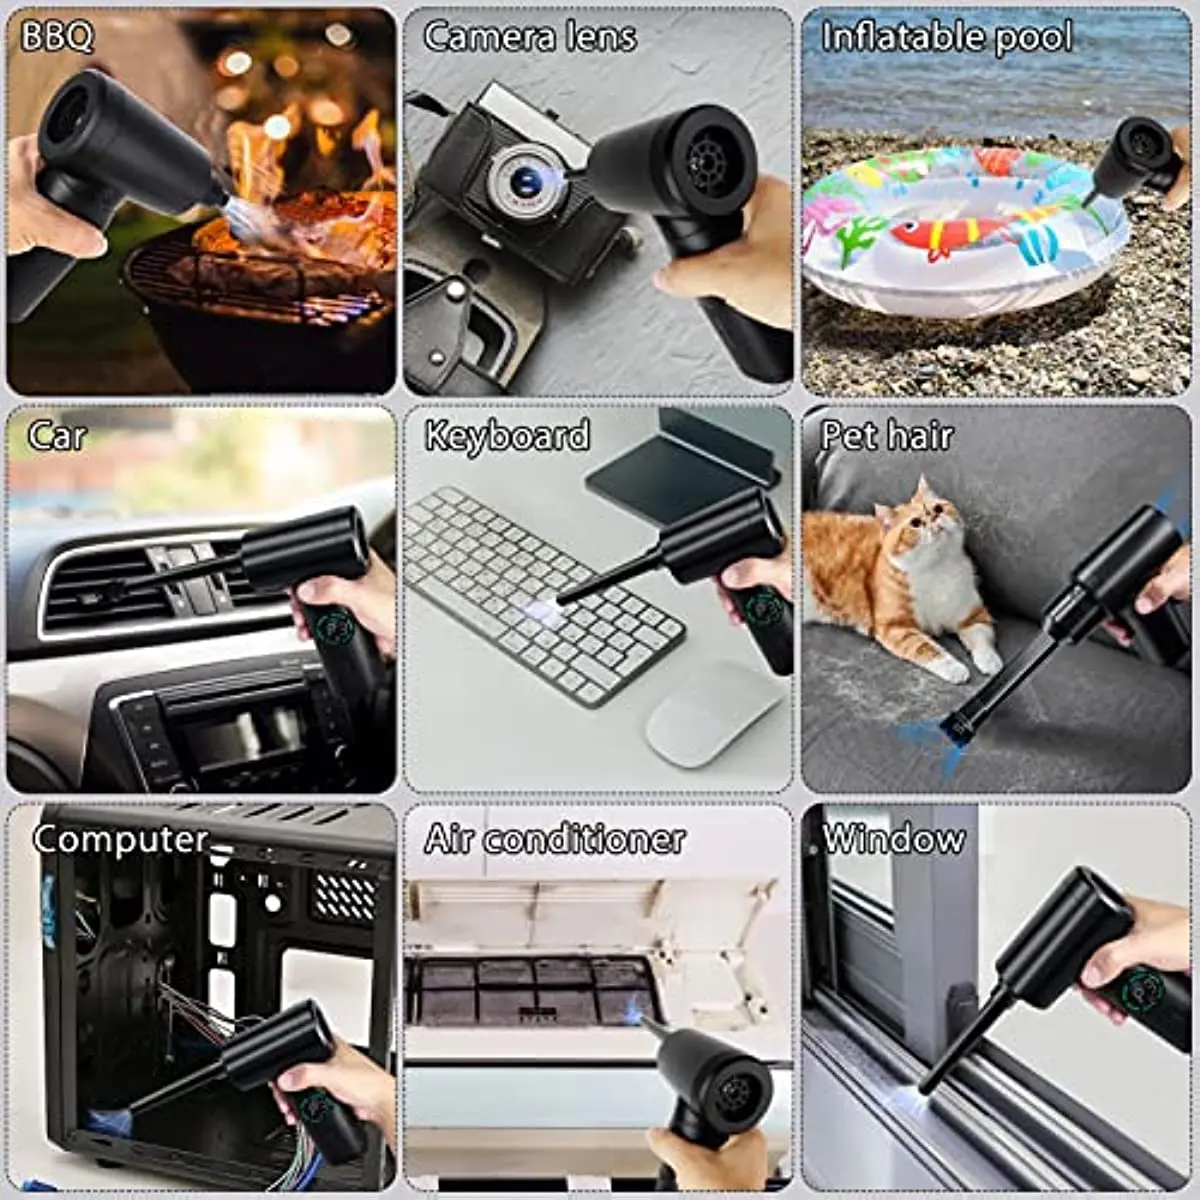 USB-Staubsauger - Tastaturreiniger / Reinigungsset für Krümel und Staub -  Computer / PC / Laptop Dustbuster - Mini-Staubsauger